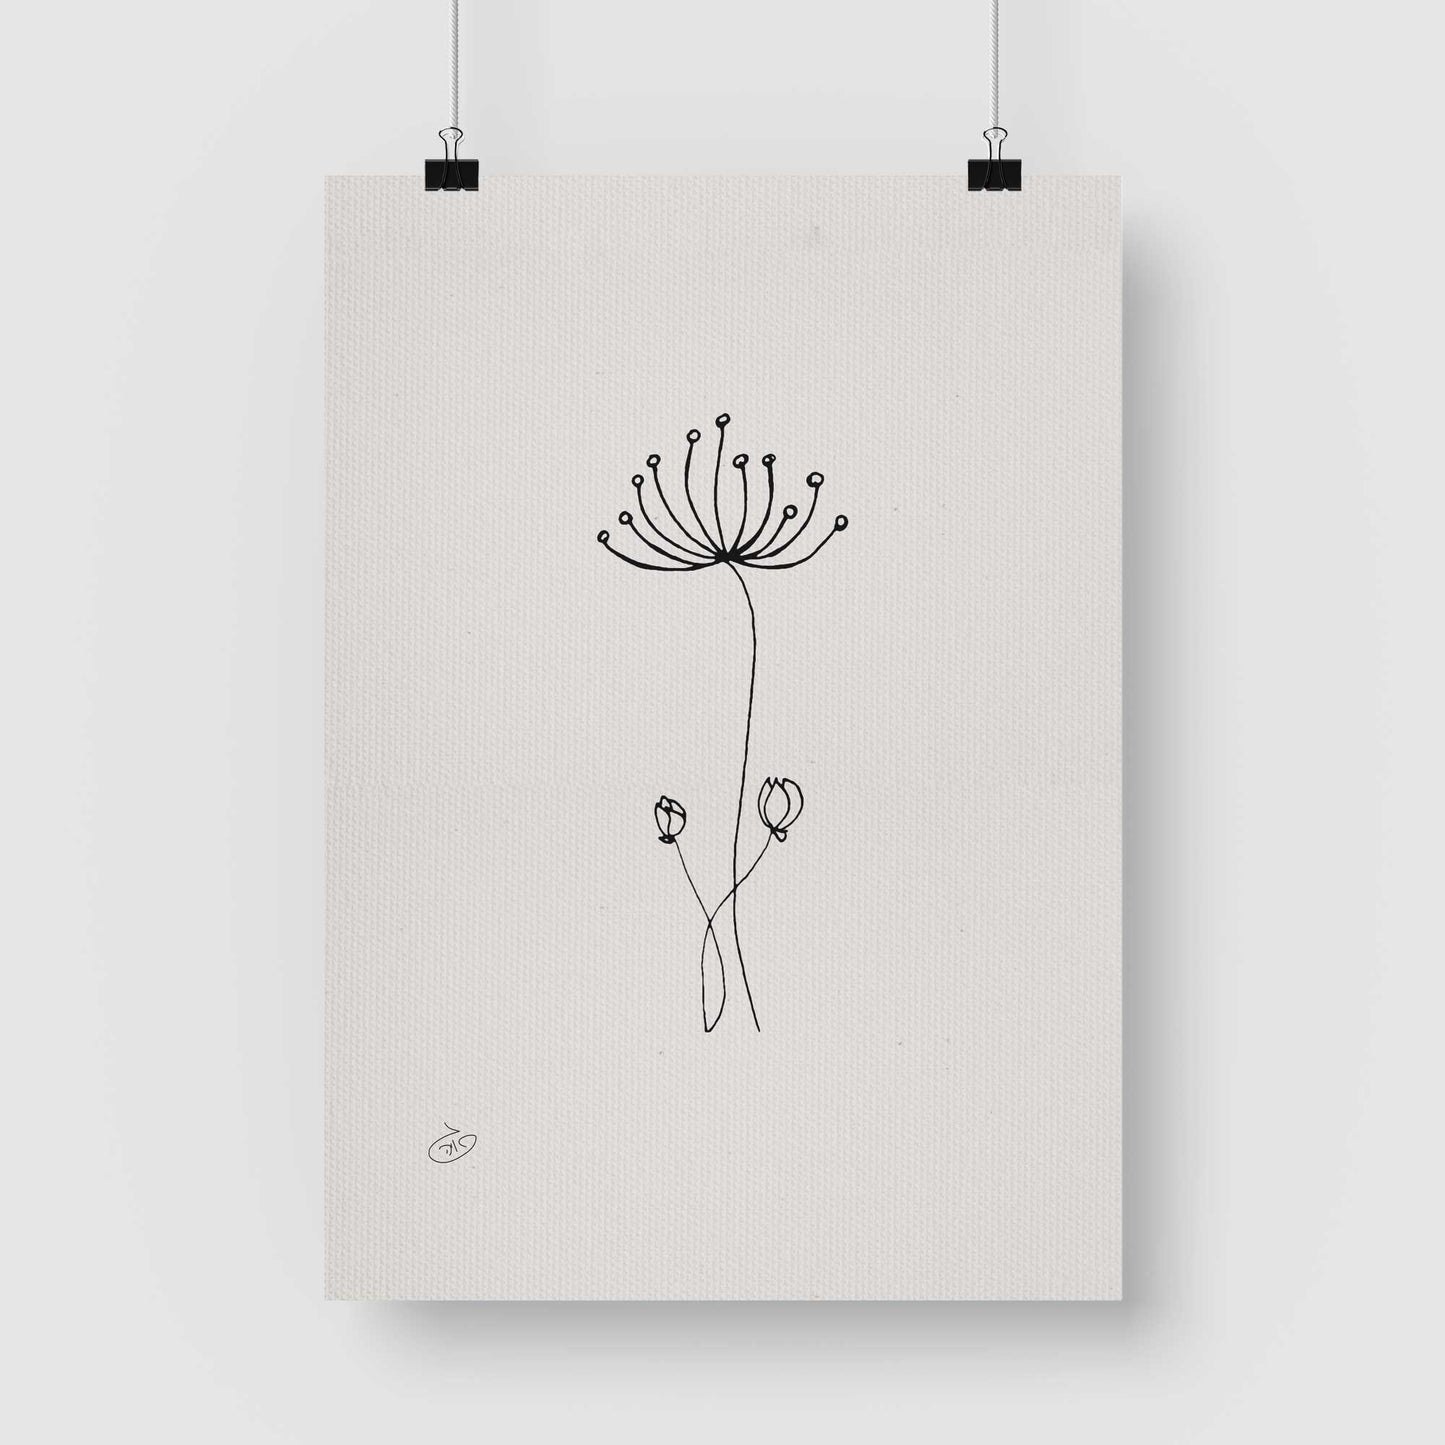 פוסטר One Line Flower - Drumsticks Poster ציור מקורי של גאיה המקדם את המודעות לאלימות בין בני זוג בכלל וכלפי נשים בפרט